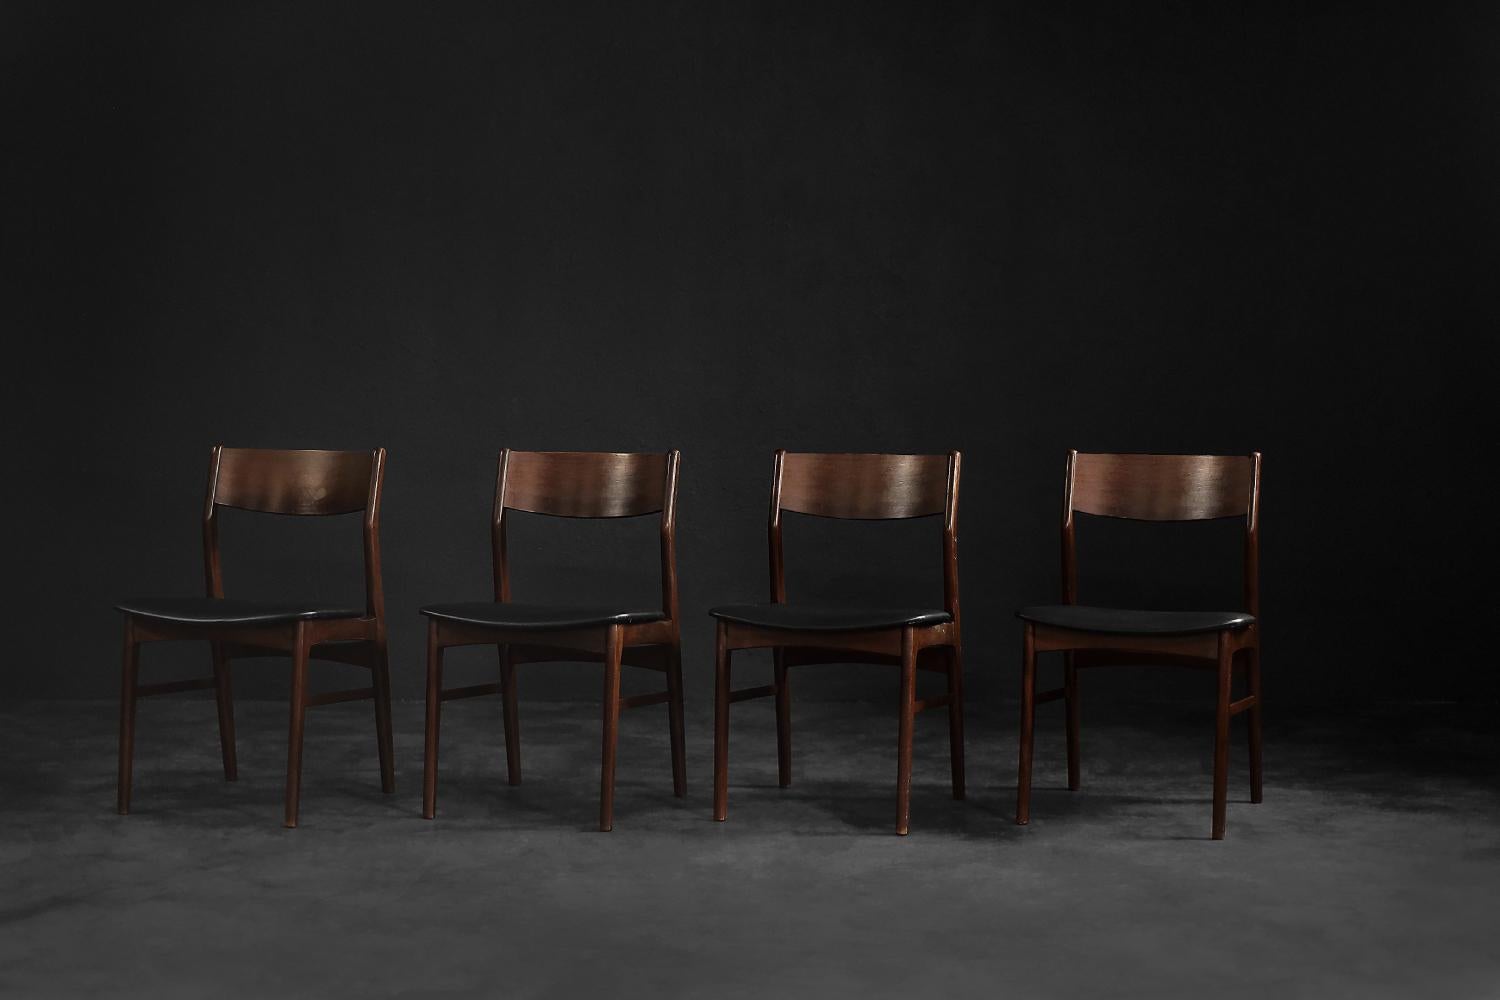 Cet ensemble de quatre chaises vintage a été fabriqué au Danemark dans les années 1960. L'élégant cadre est en bois de hêtre dans une teinte brun chocolat. Le dossier est en bois de rose. Le dossier légèrement incliné s'harmonise parfaitement avec